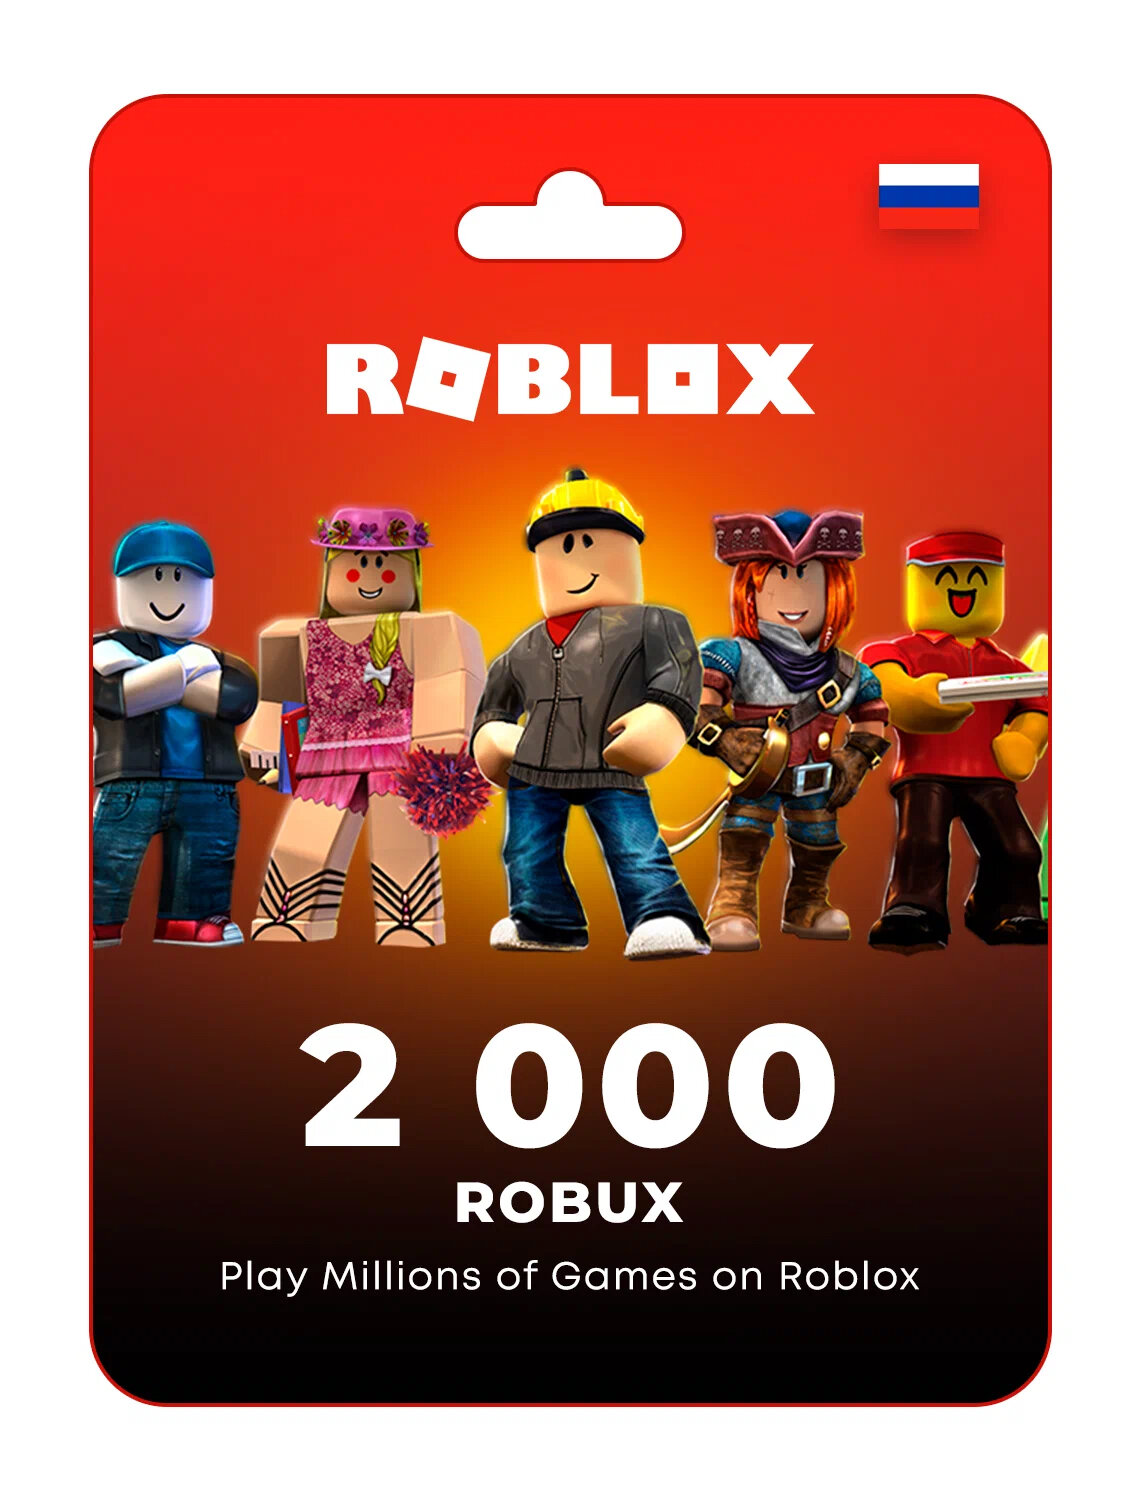 Игровая валюта платформы Roblox - 2000 Robux + подарок / Пополнение счета Roblox на 2000 Robux / Roblox Gift Card (Весь мир, Россия, Беларусь)